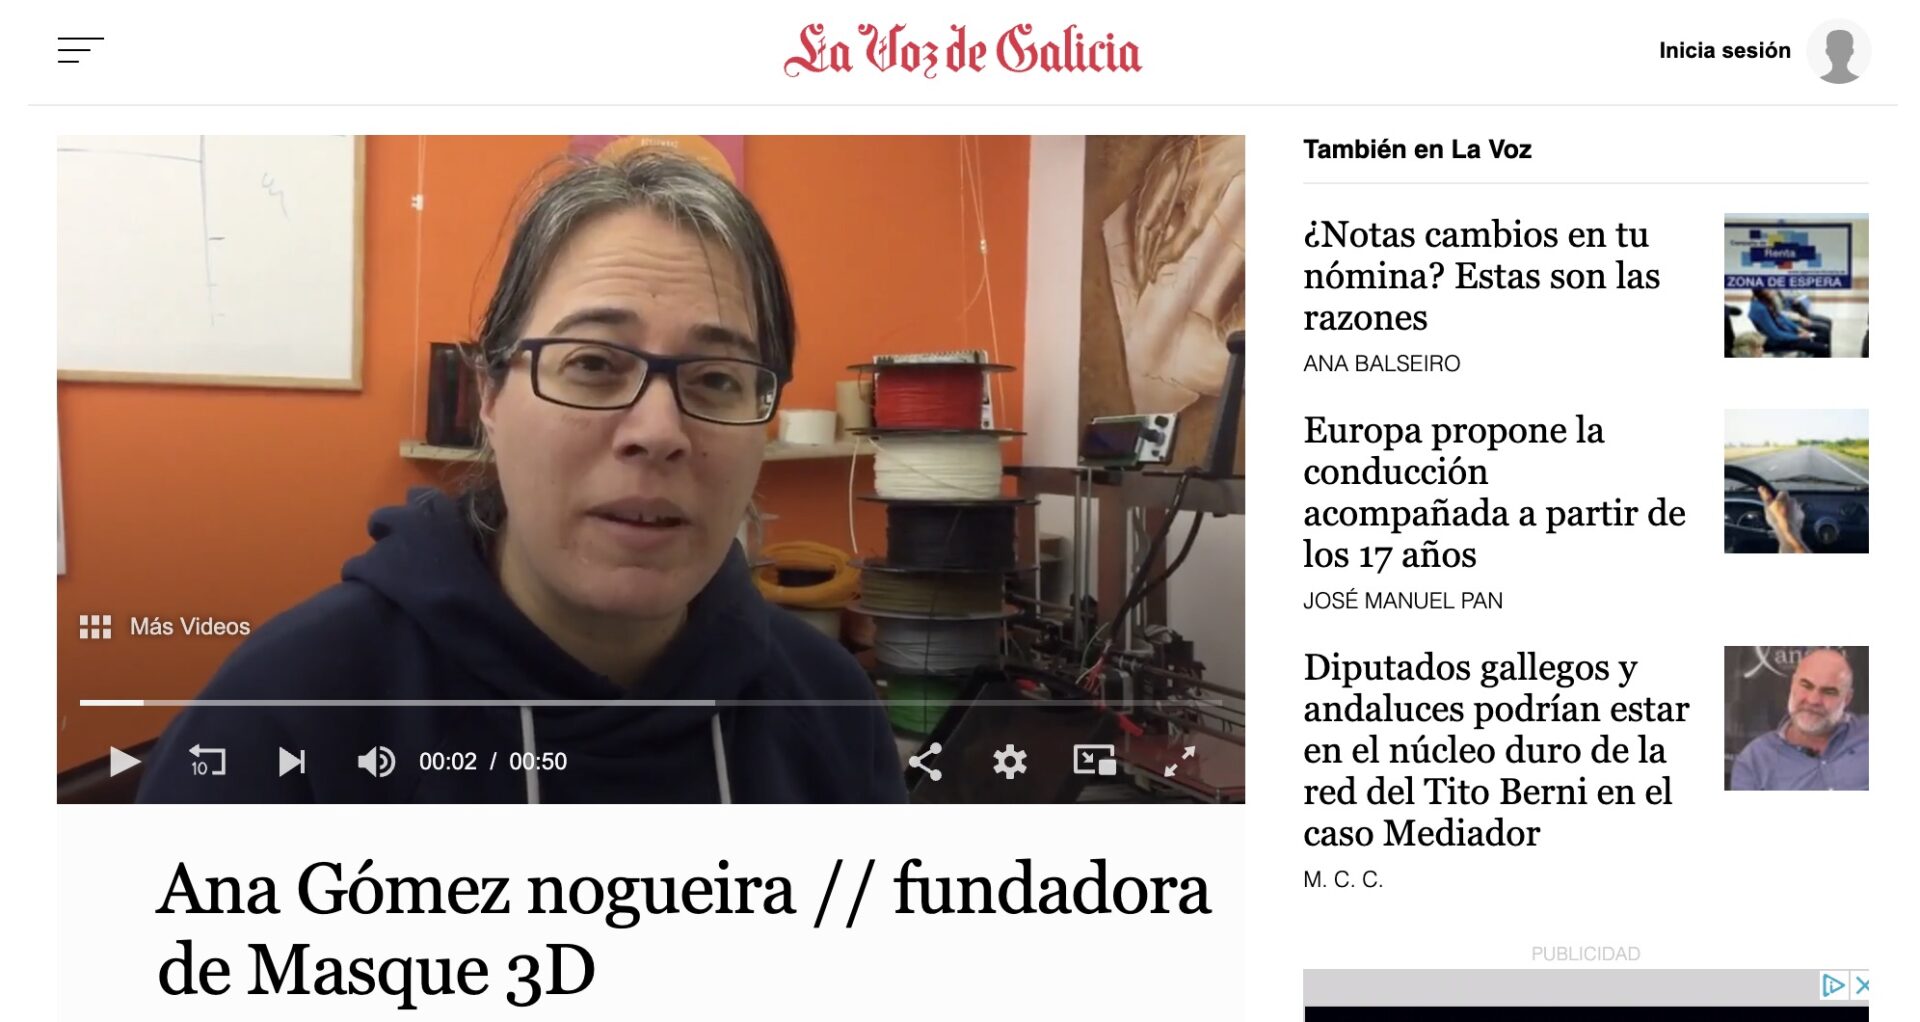 Recorte de prensa de la web de La Voz de Galicia con vídeo donde se ve a Ana Gómez de Más que 3D